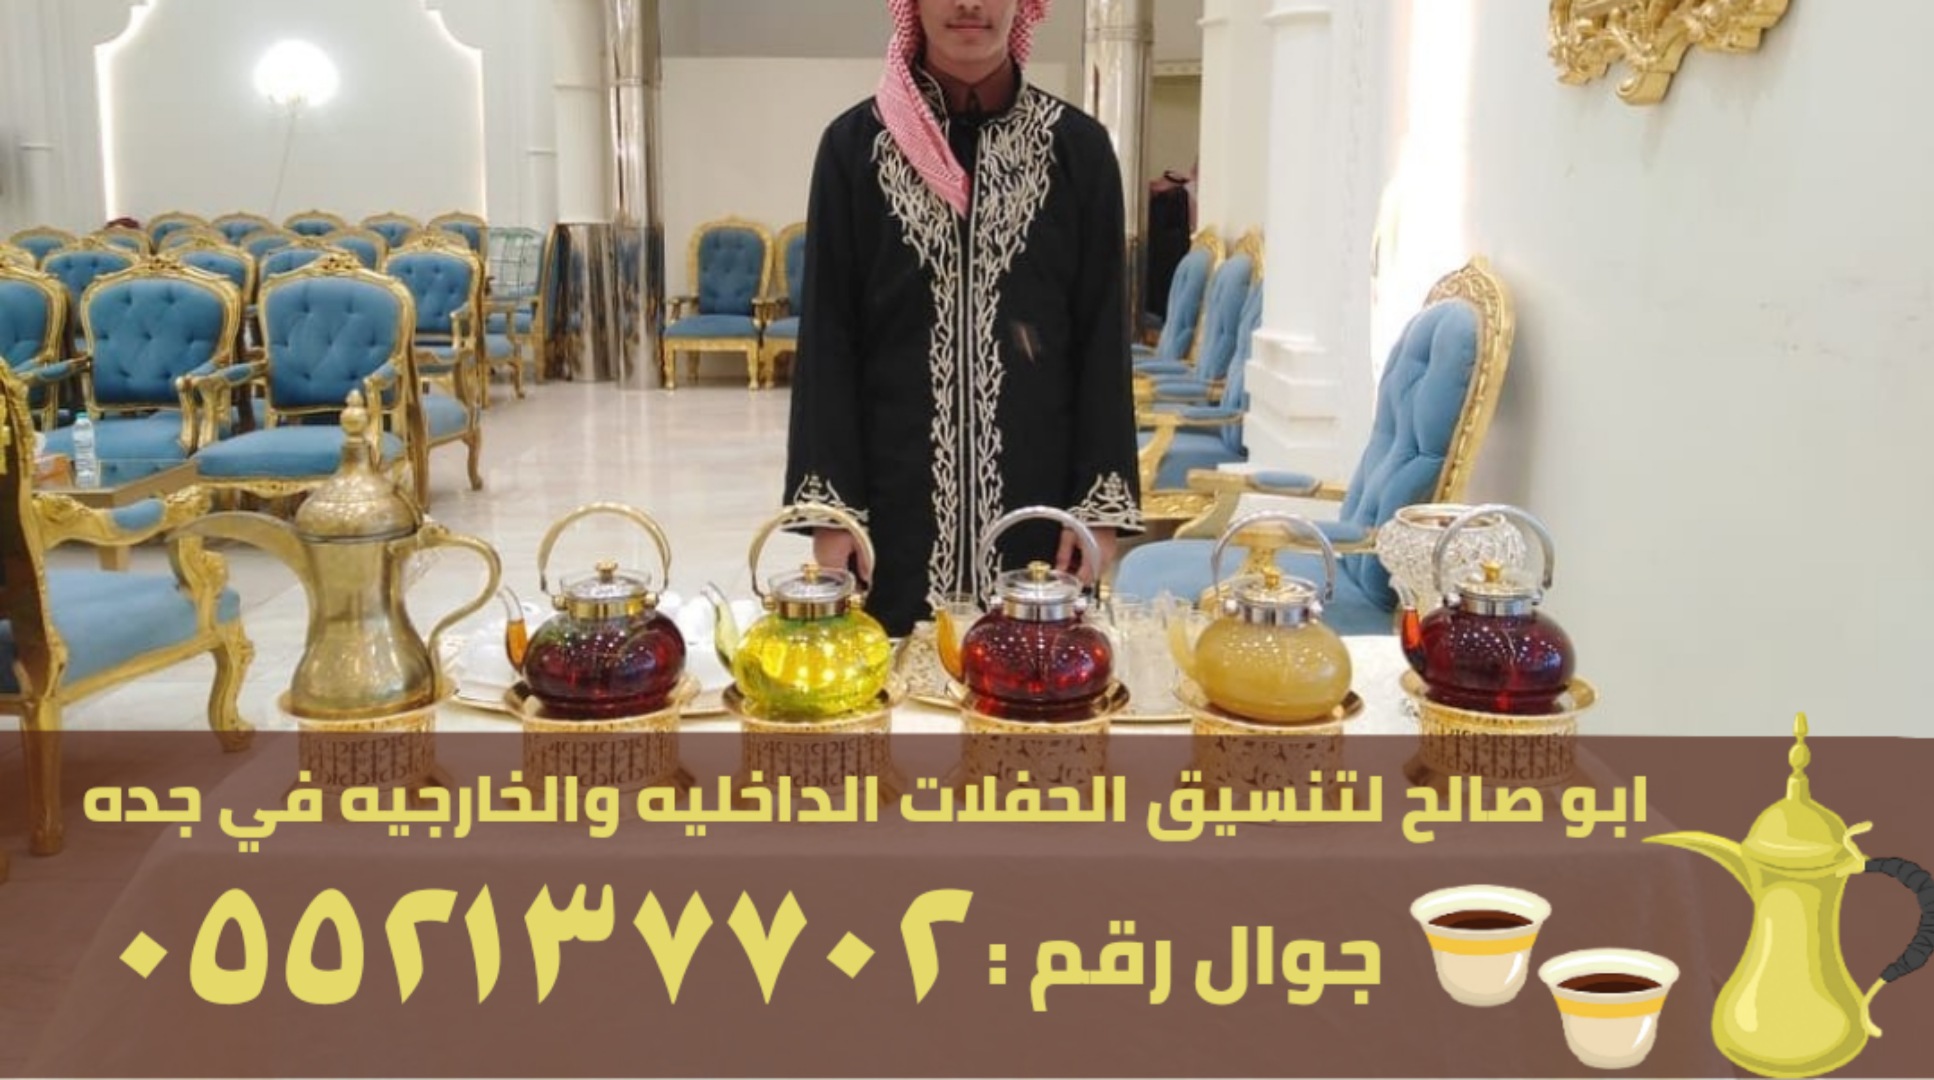 مباشرات و صبابين قهوة في جدة, 0552137702 P_2600vnqih2